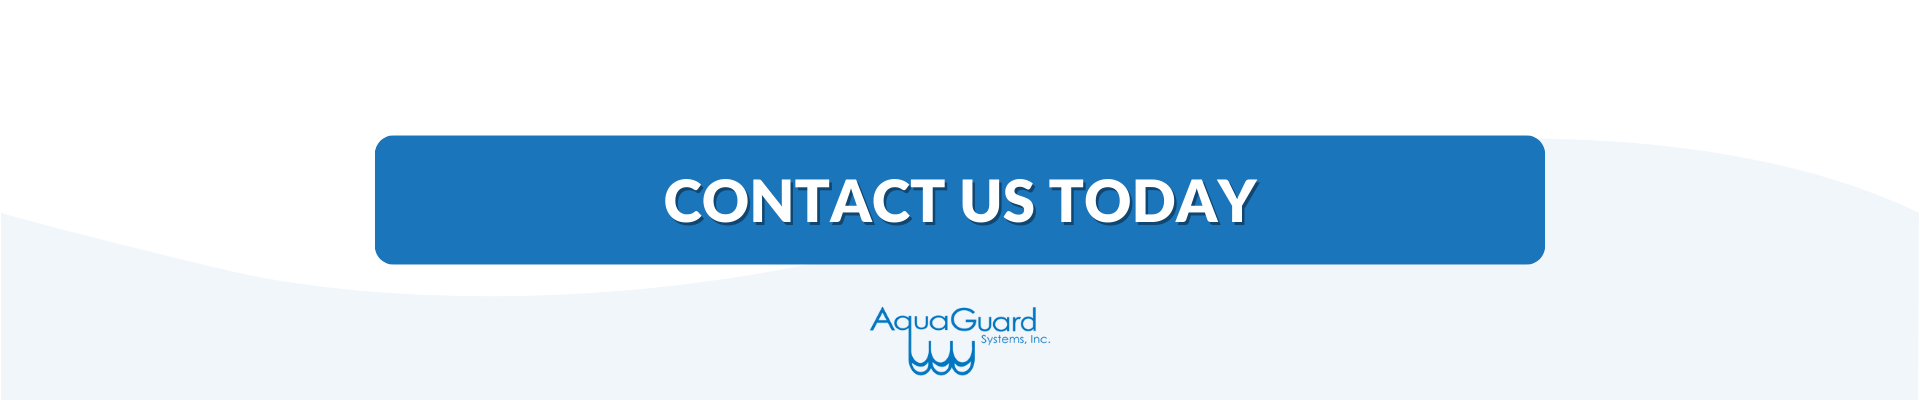 Aquaguard Contact Us